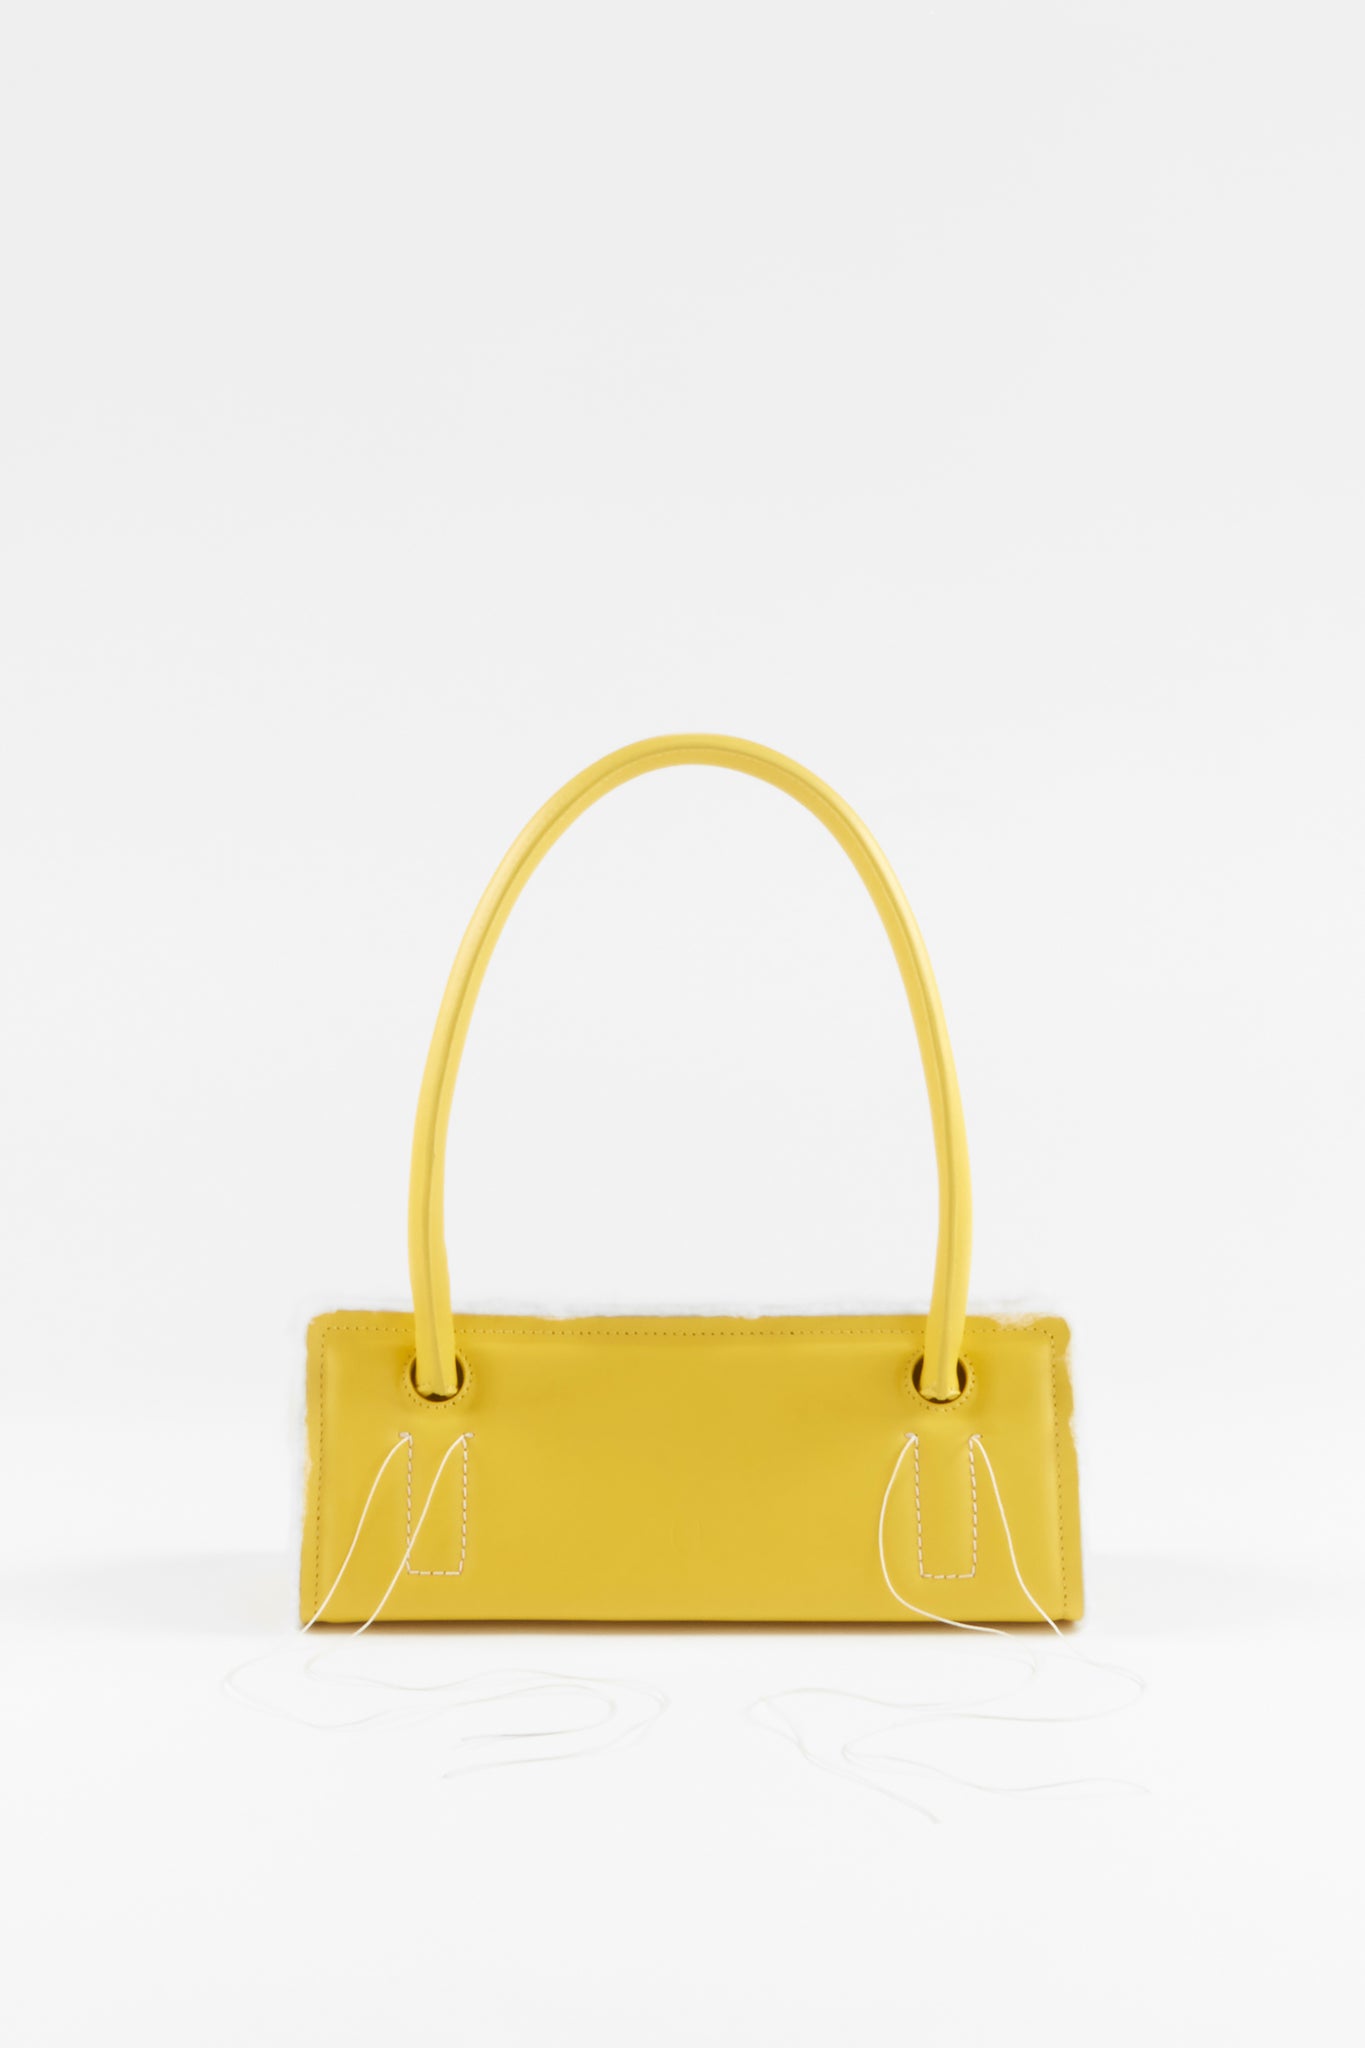 Buy BOLSA Women's Handbag (Yellow & Black) at Amazon.in